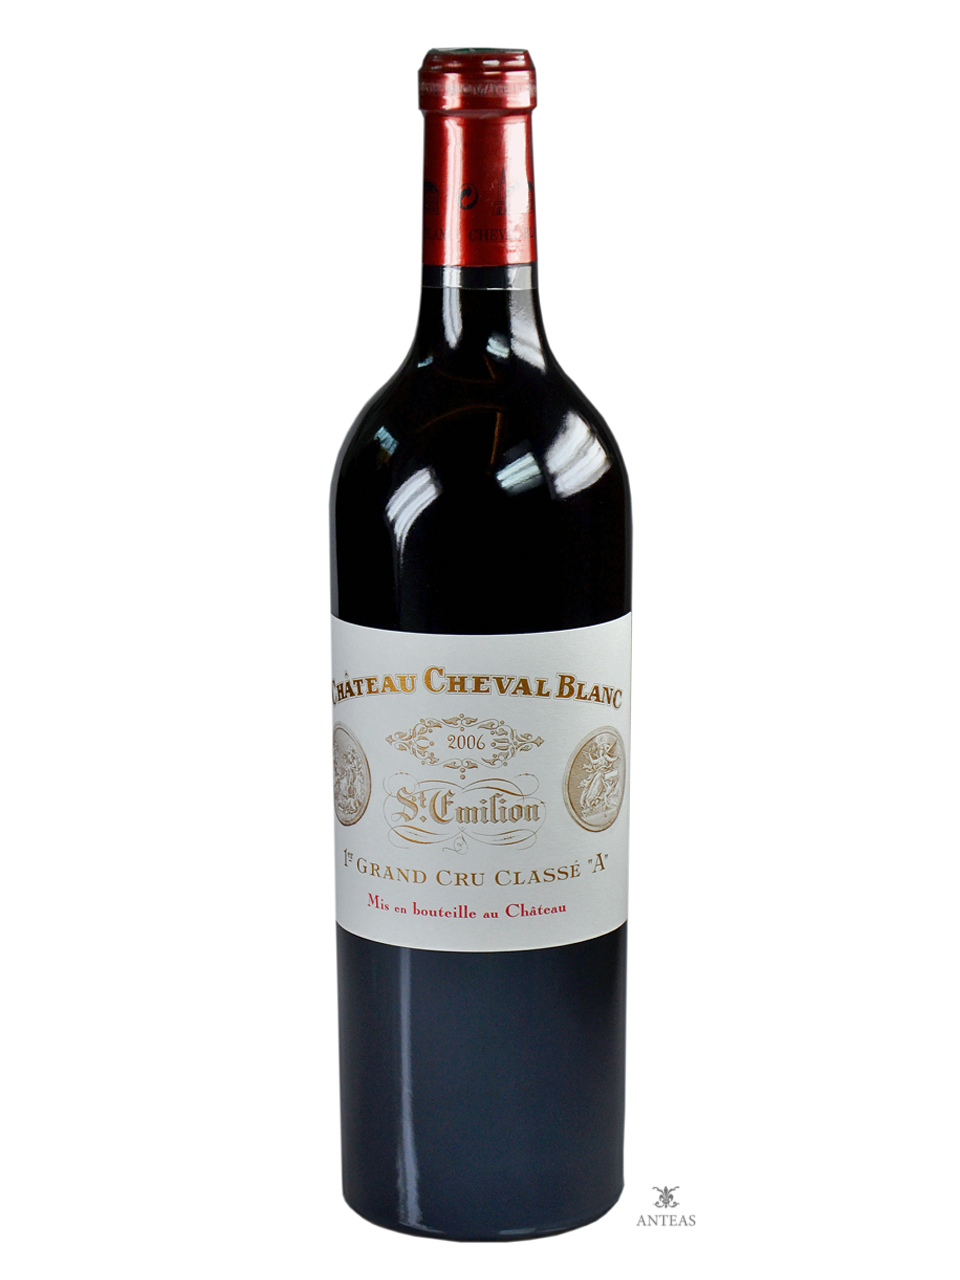 Château Cheval Blanc 2014 – 1er Grand Cru Classé A